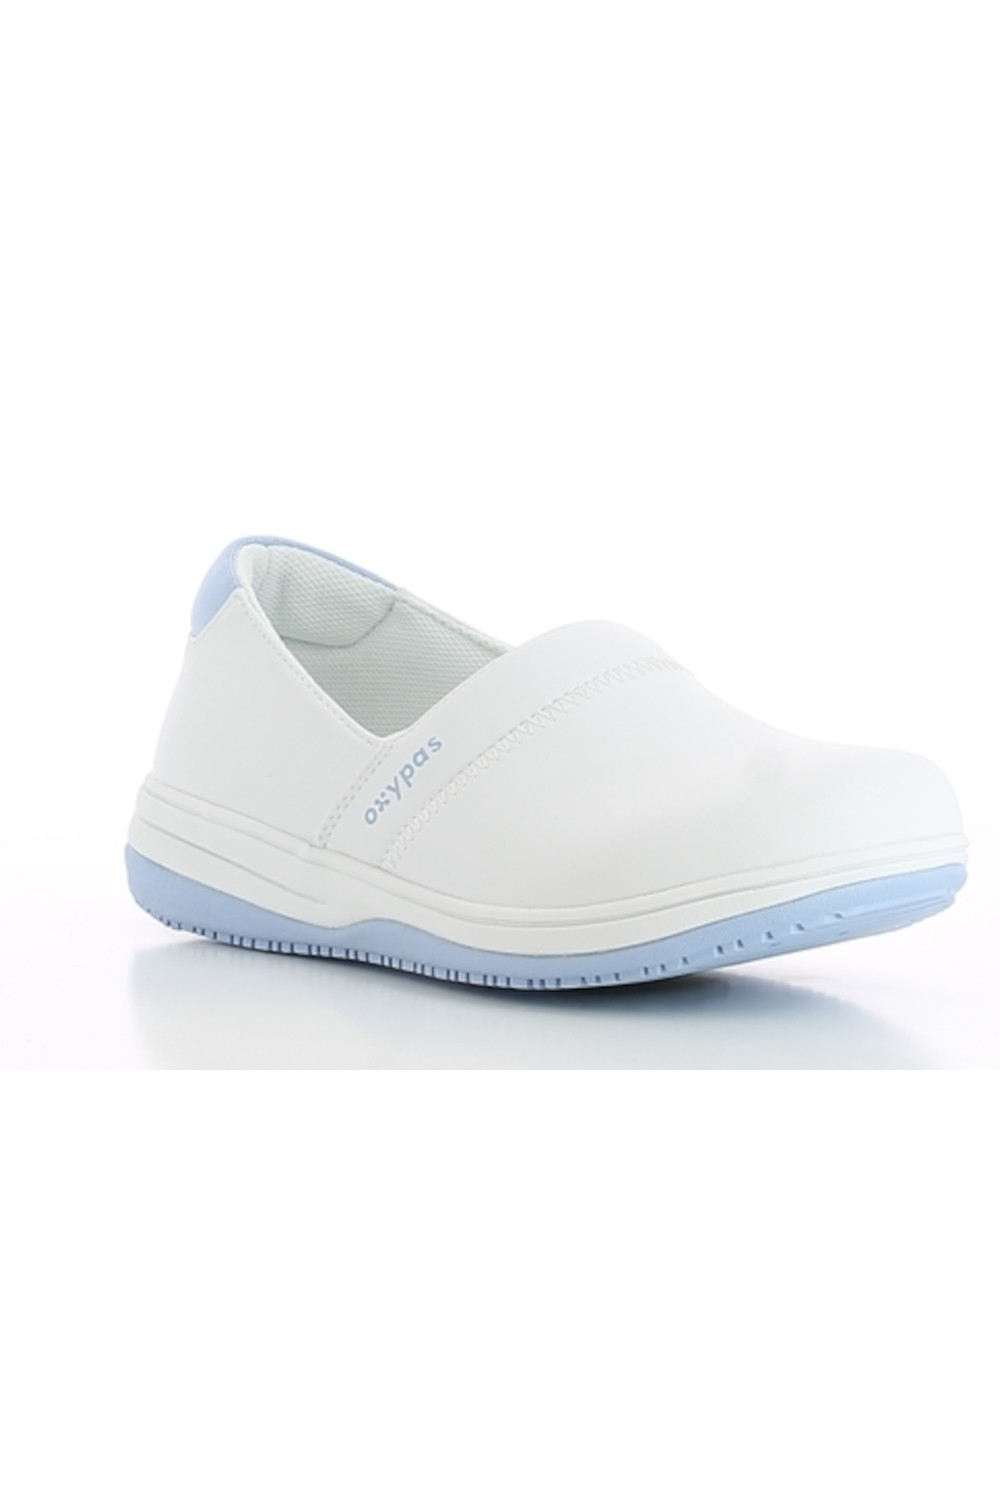 Buty damskie SUZY obuwie medyczne kolor biały z błękitem